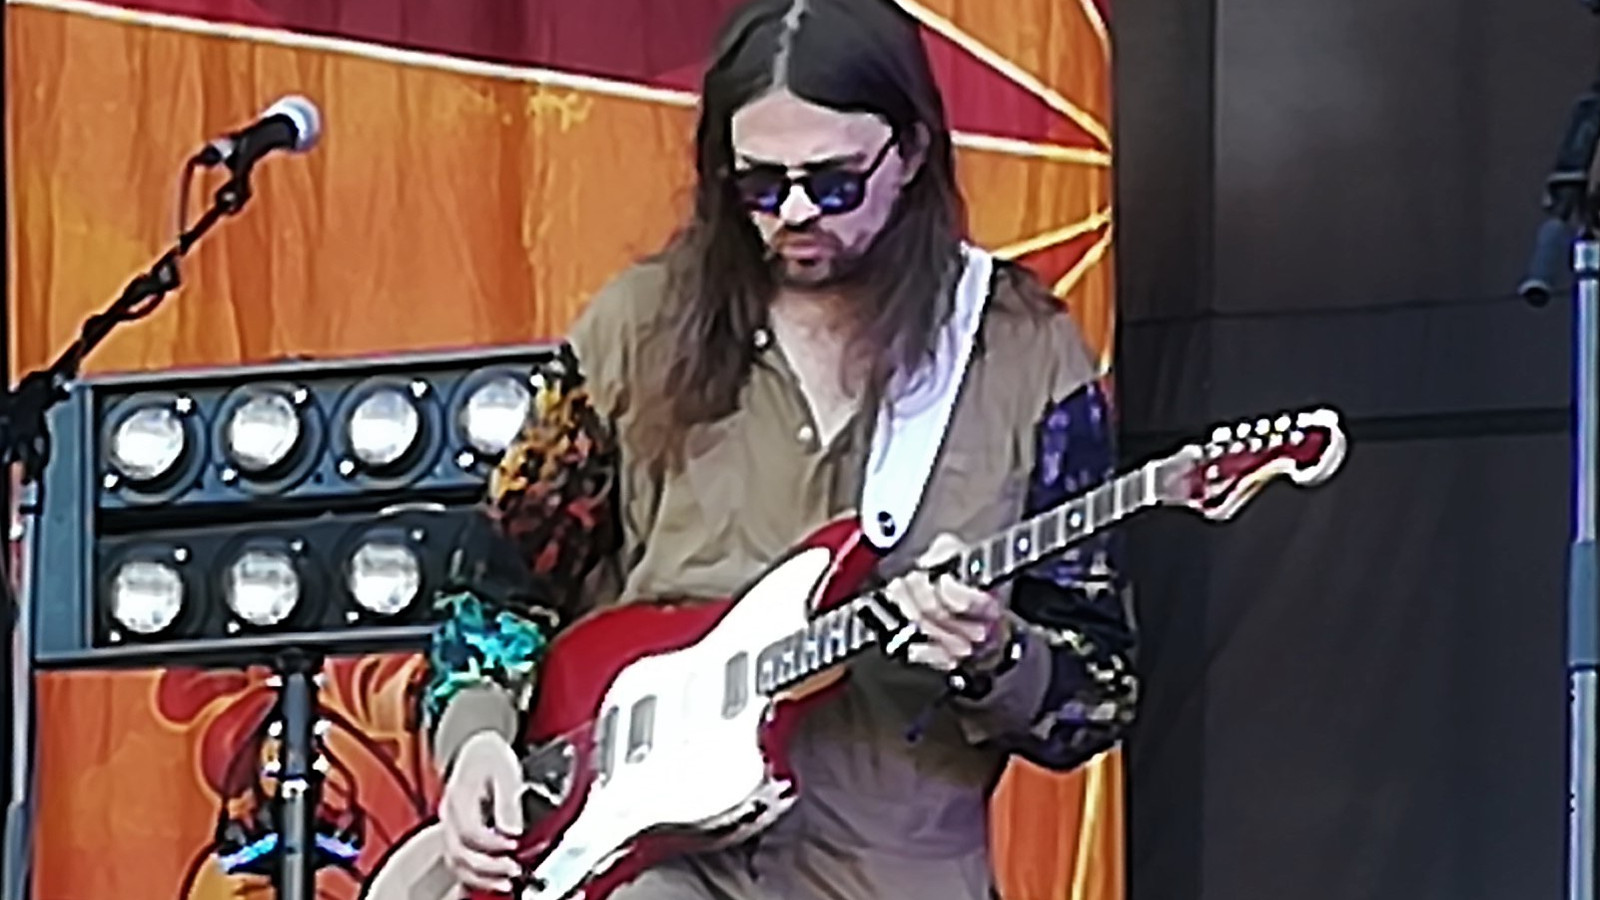 Kuvassa on Timo Kämäräinen soittamassa kitaraa ja hän katsoo alaspäin. Hänellä on pitkät tummat hiukset ja harmaa paita päällään. Taustalla on oranssia seinää ja edessä on kahdeksan valon taulu. Oikealla on mustaa taustaa.